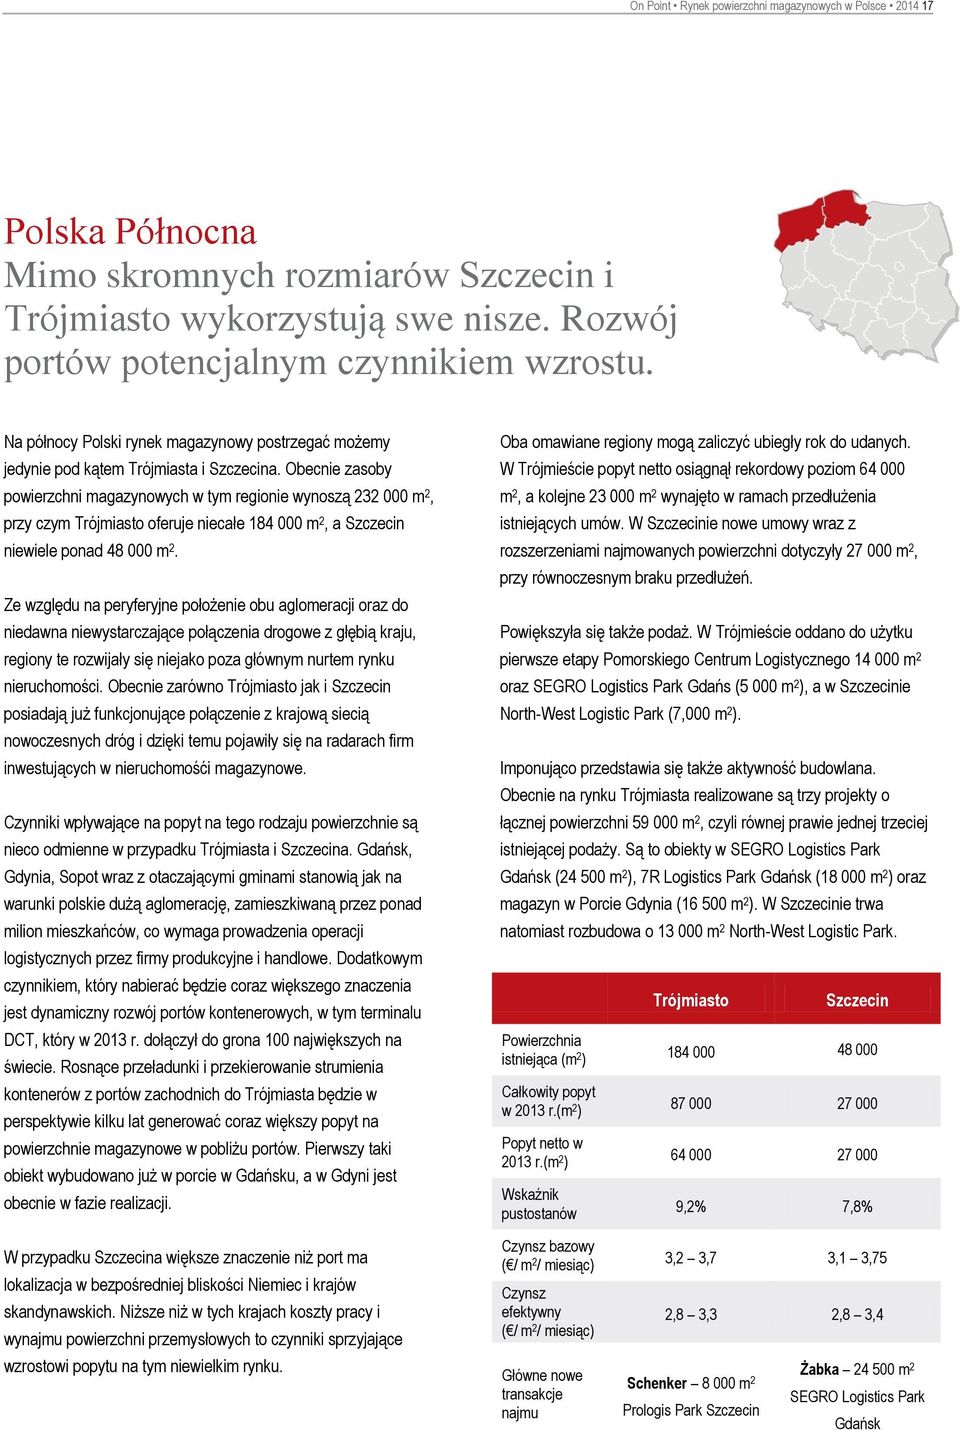 Obecnie zasoby powierzchni magazynowych w tym regionie wynoszą 232 000 m 2, przy czym Trójmiasto oferuje niecałe 184 000 m 2, a Szczecin niewiele ponad 48 000 m 2.